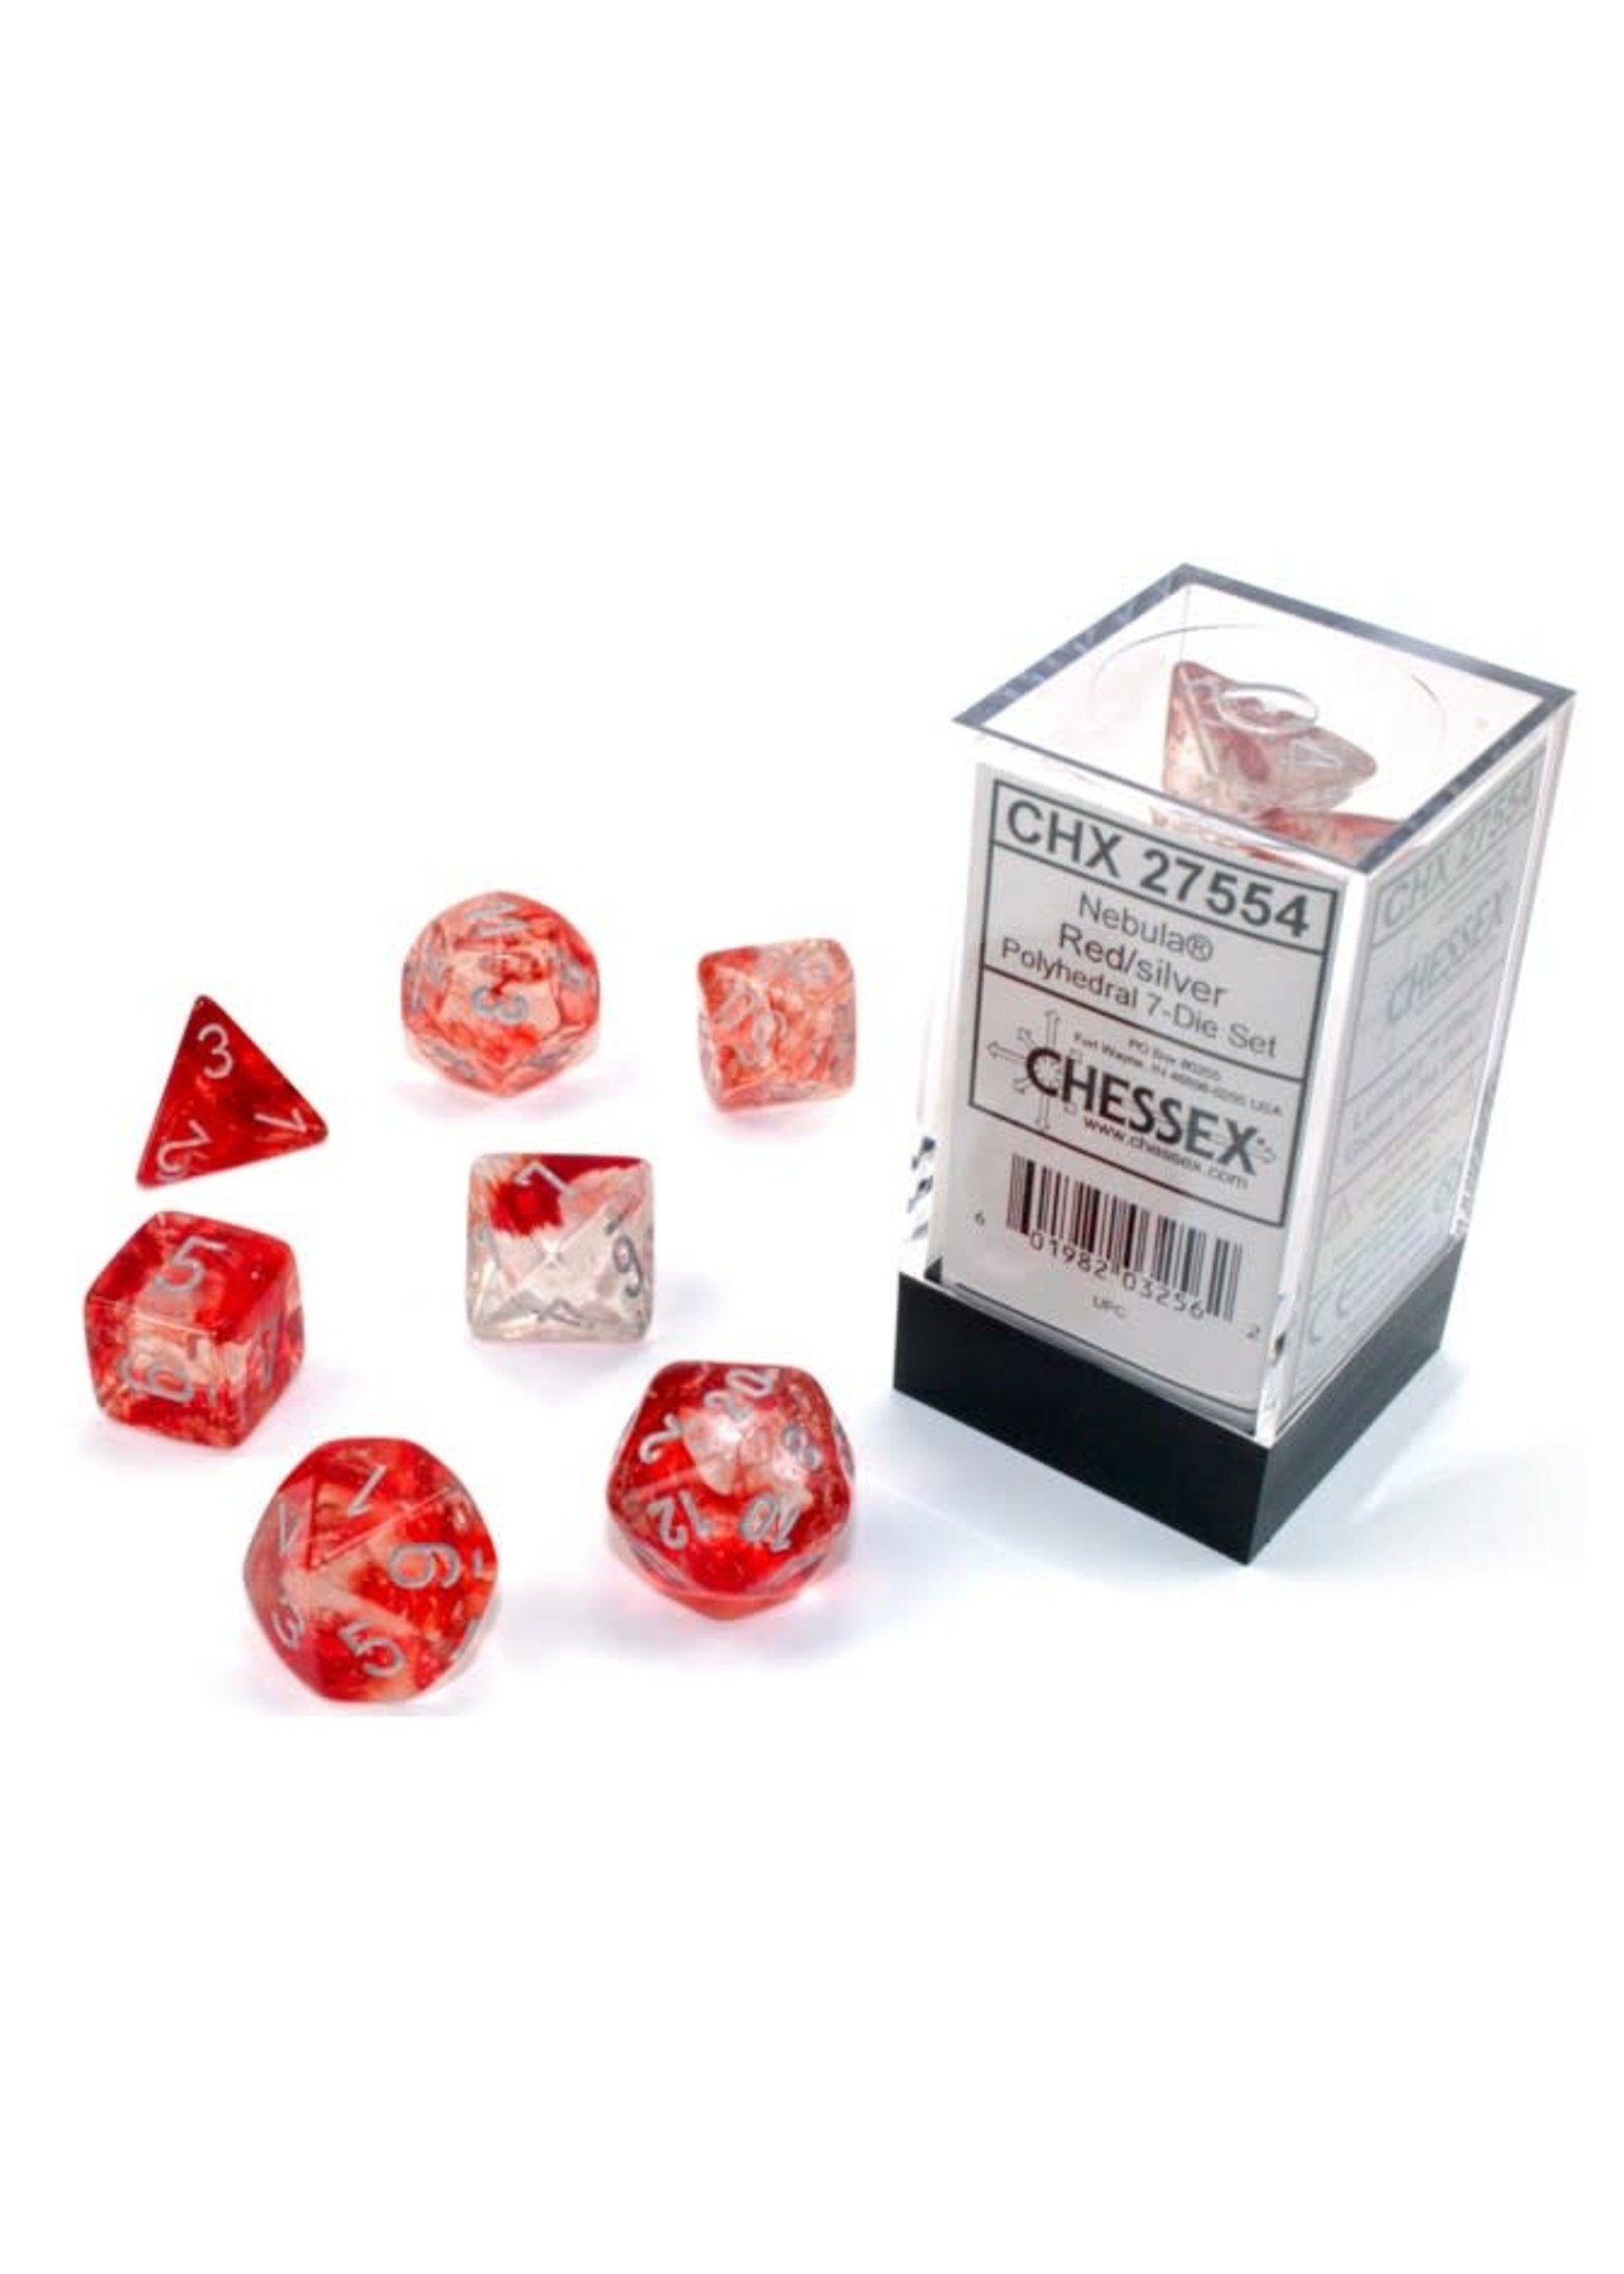 Chessex Luminary Nebula Poly 7 set: Red w/ Silver